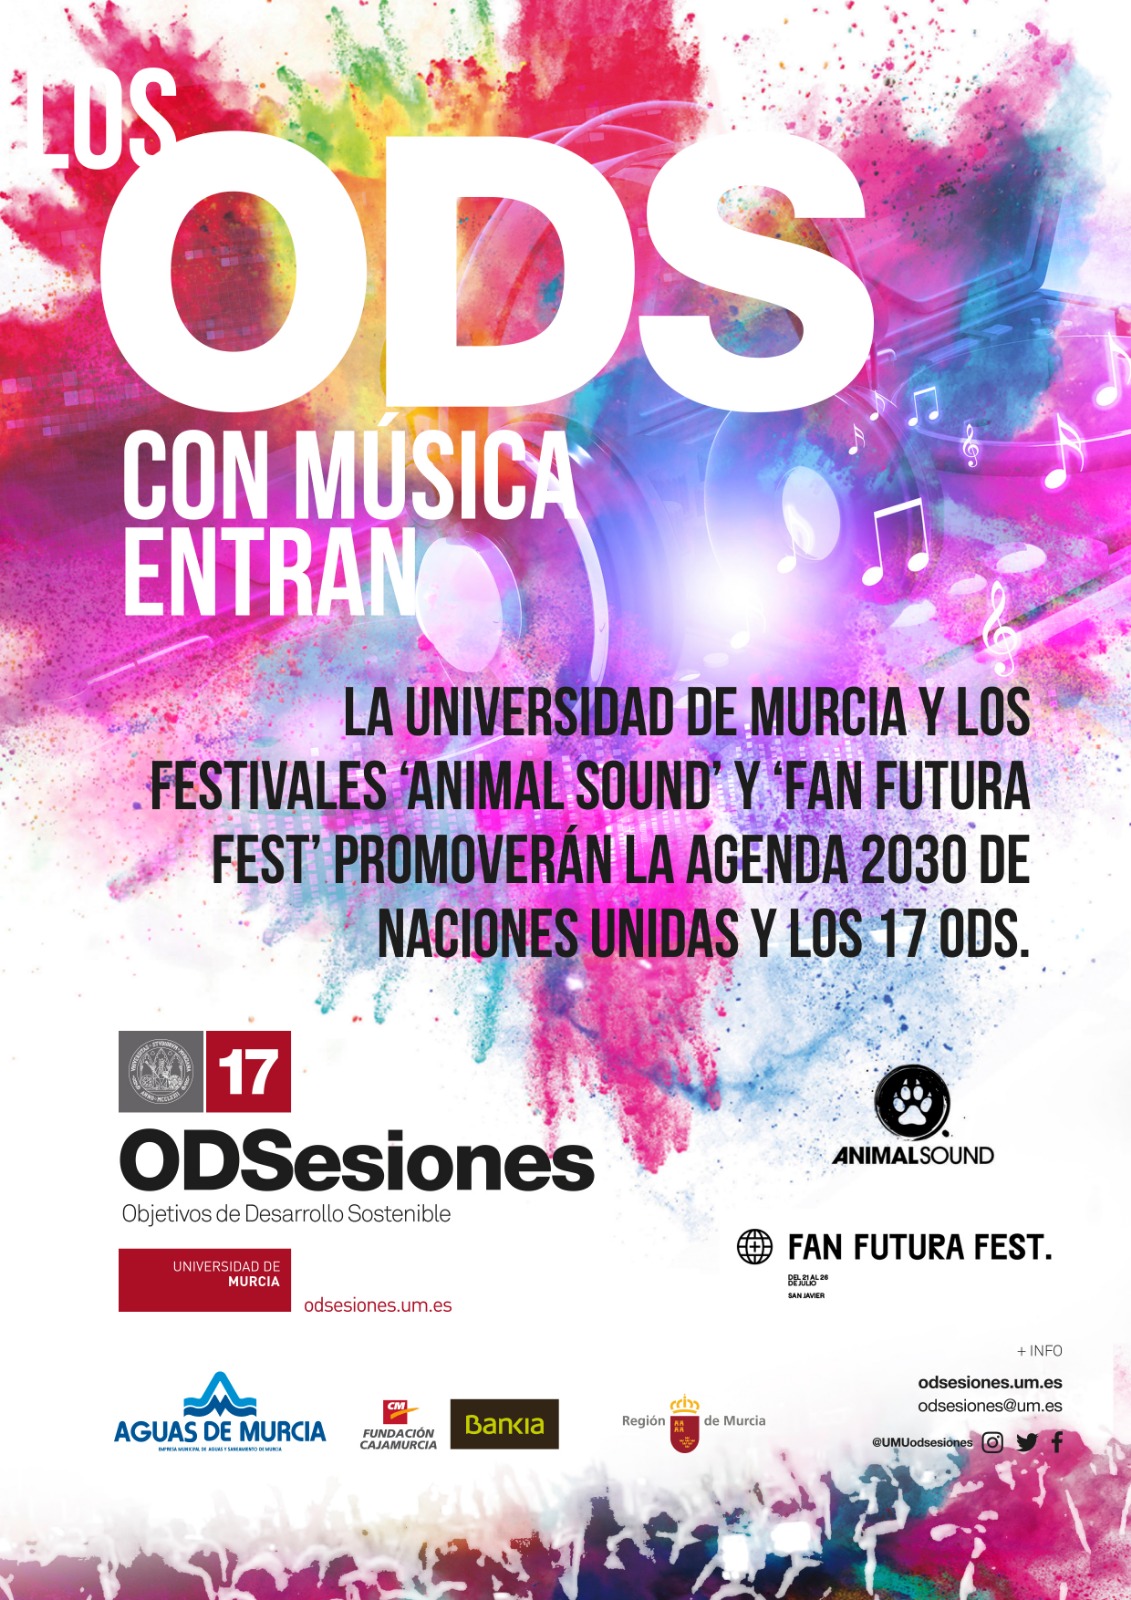 "Los ODS, con música entran", lema del convenio de colaboración entre ODSesiones de la Universidad de Murcia y los festivales Animal Sound y Fan Futura Fest